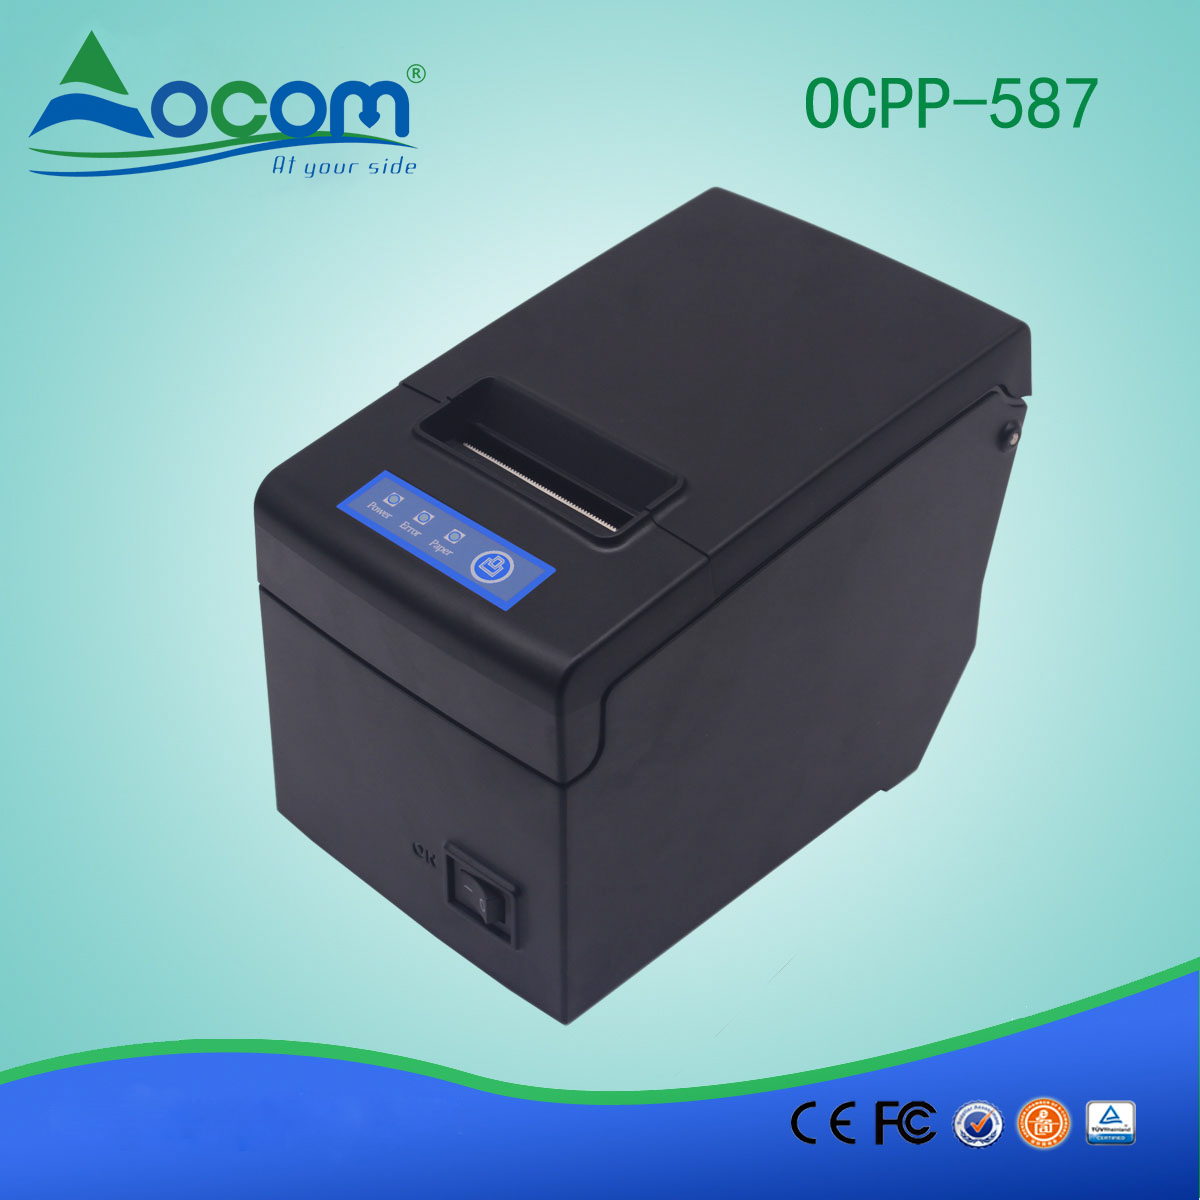 Impressora de recibos térmicos de 58mm OCPP-587-R RS232 / COM / Serial Port